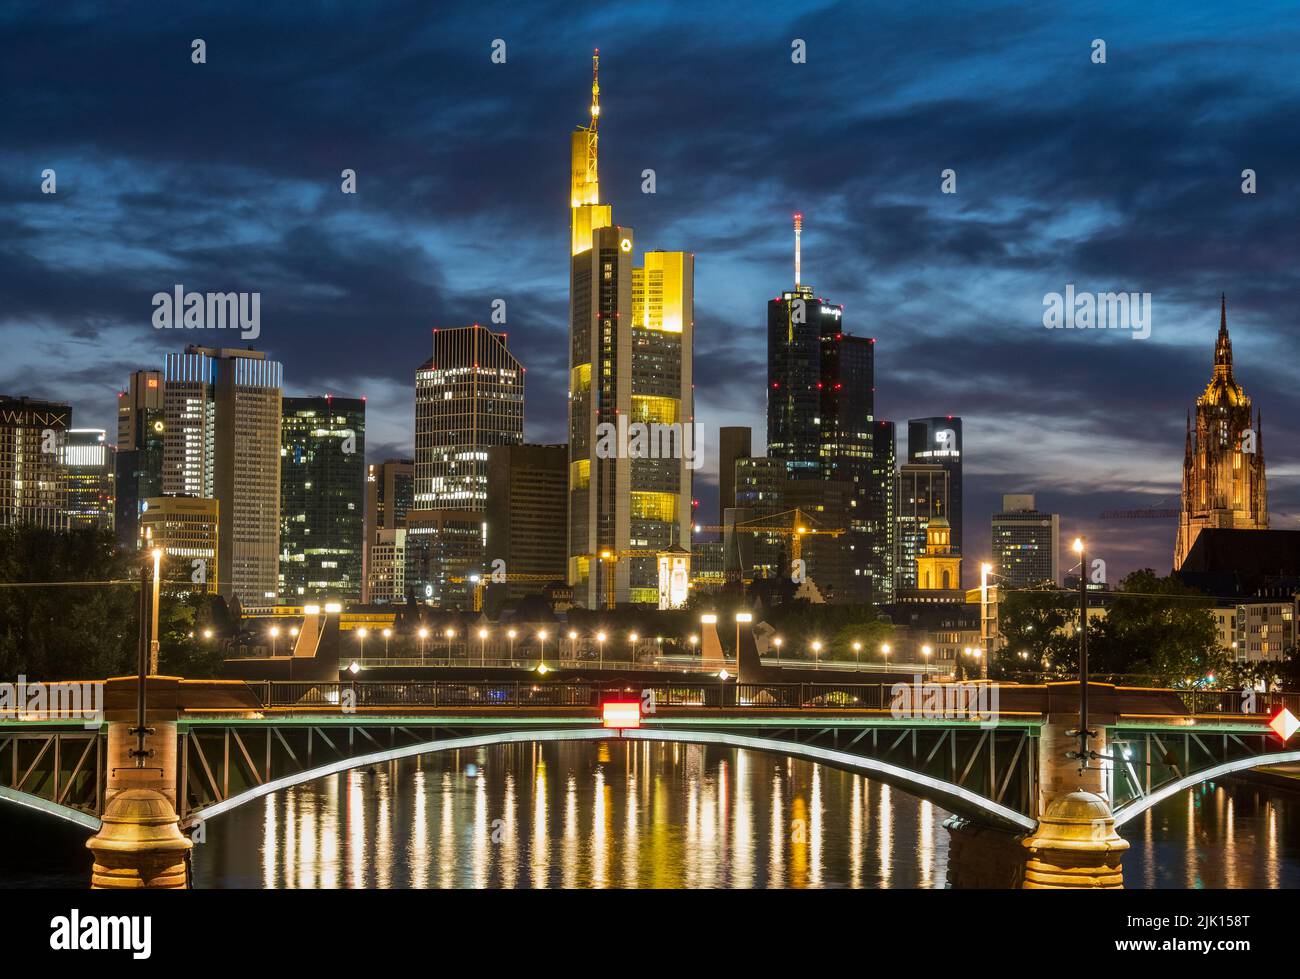 La rivière main, le pont Ignatz Bubis, la cathédrale Dom et les gratte-ciel de Francfort, Francfort, Hesse, Allemagne, Europe Banque D'Images